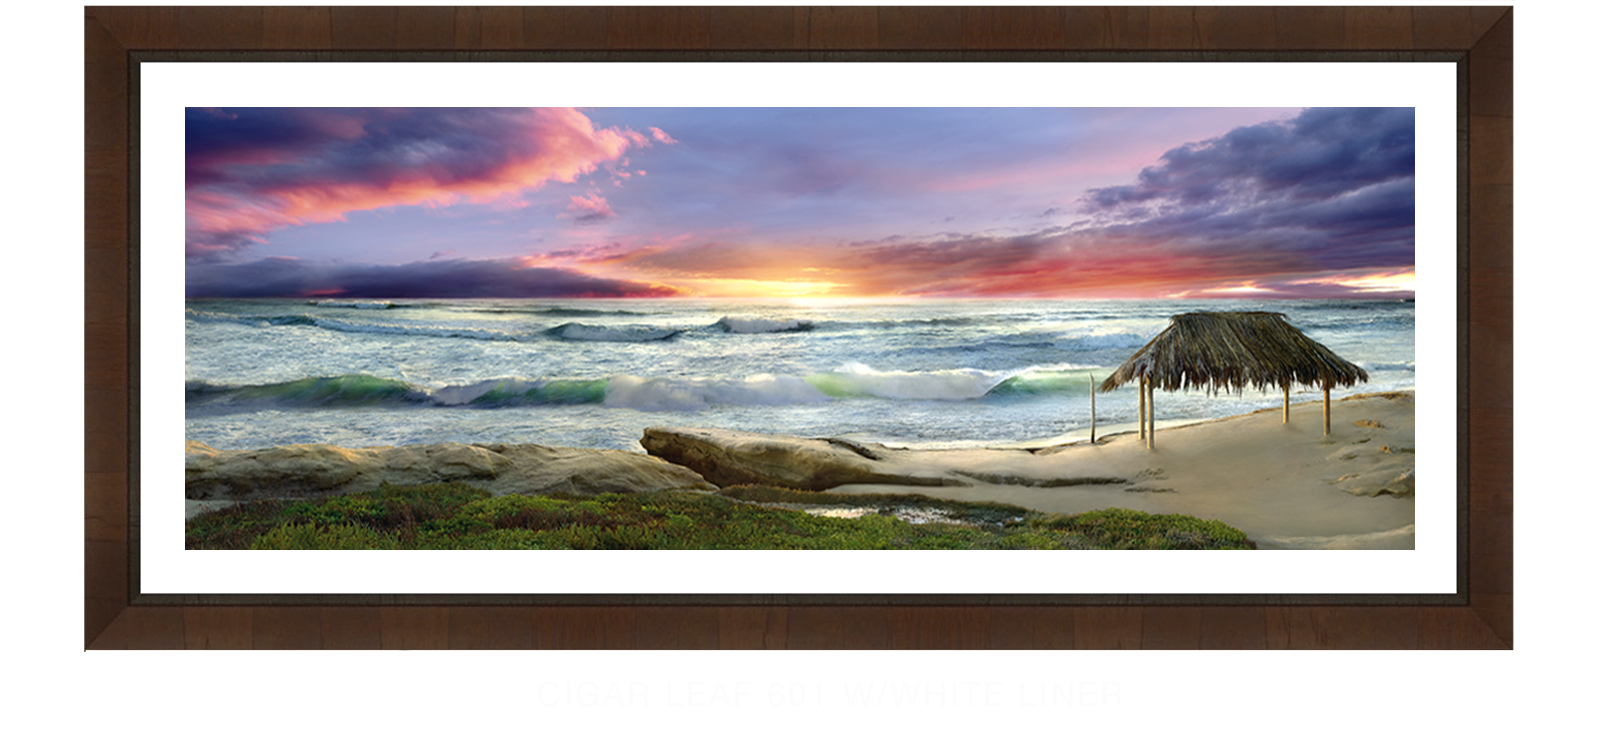 30AWAITANCE Cigar Leaf 601 w_Wht Liner T